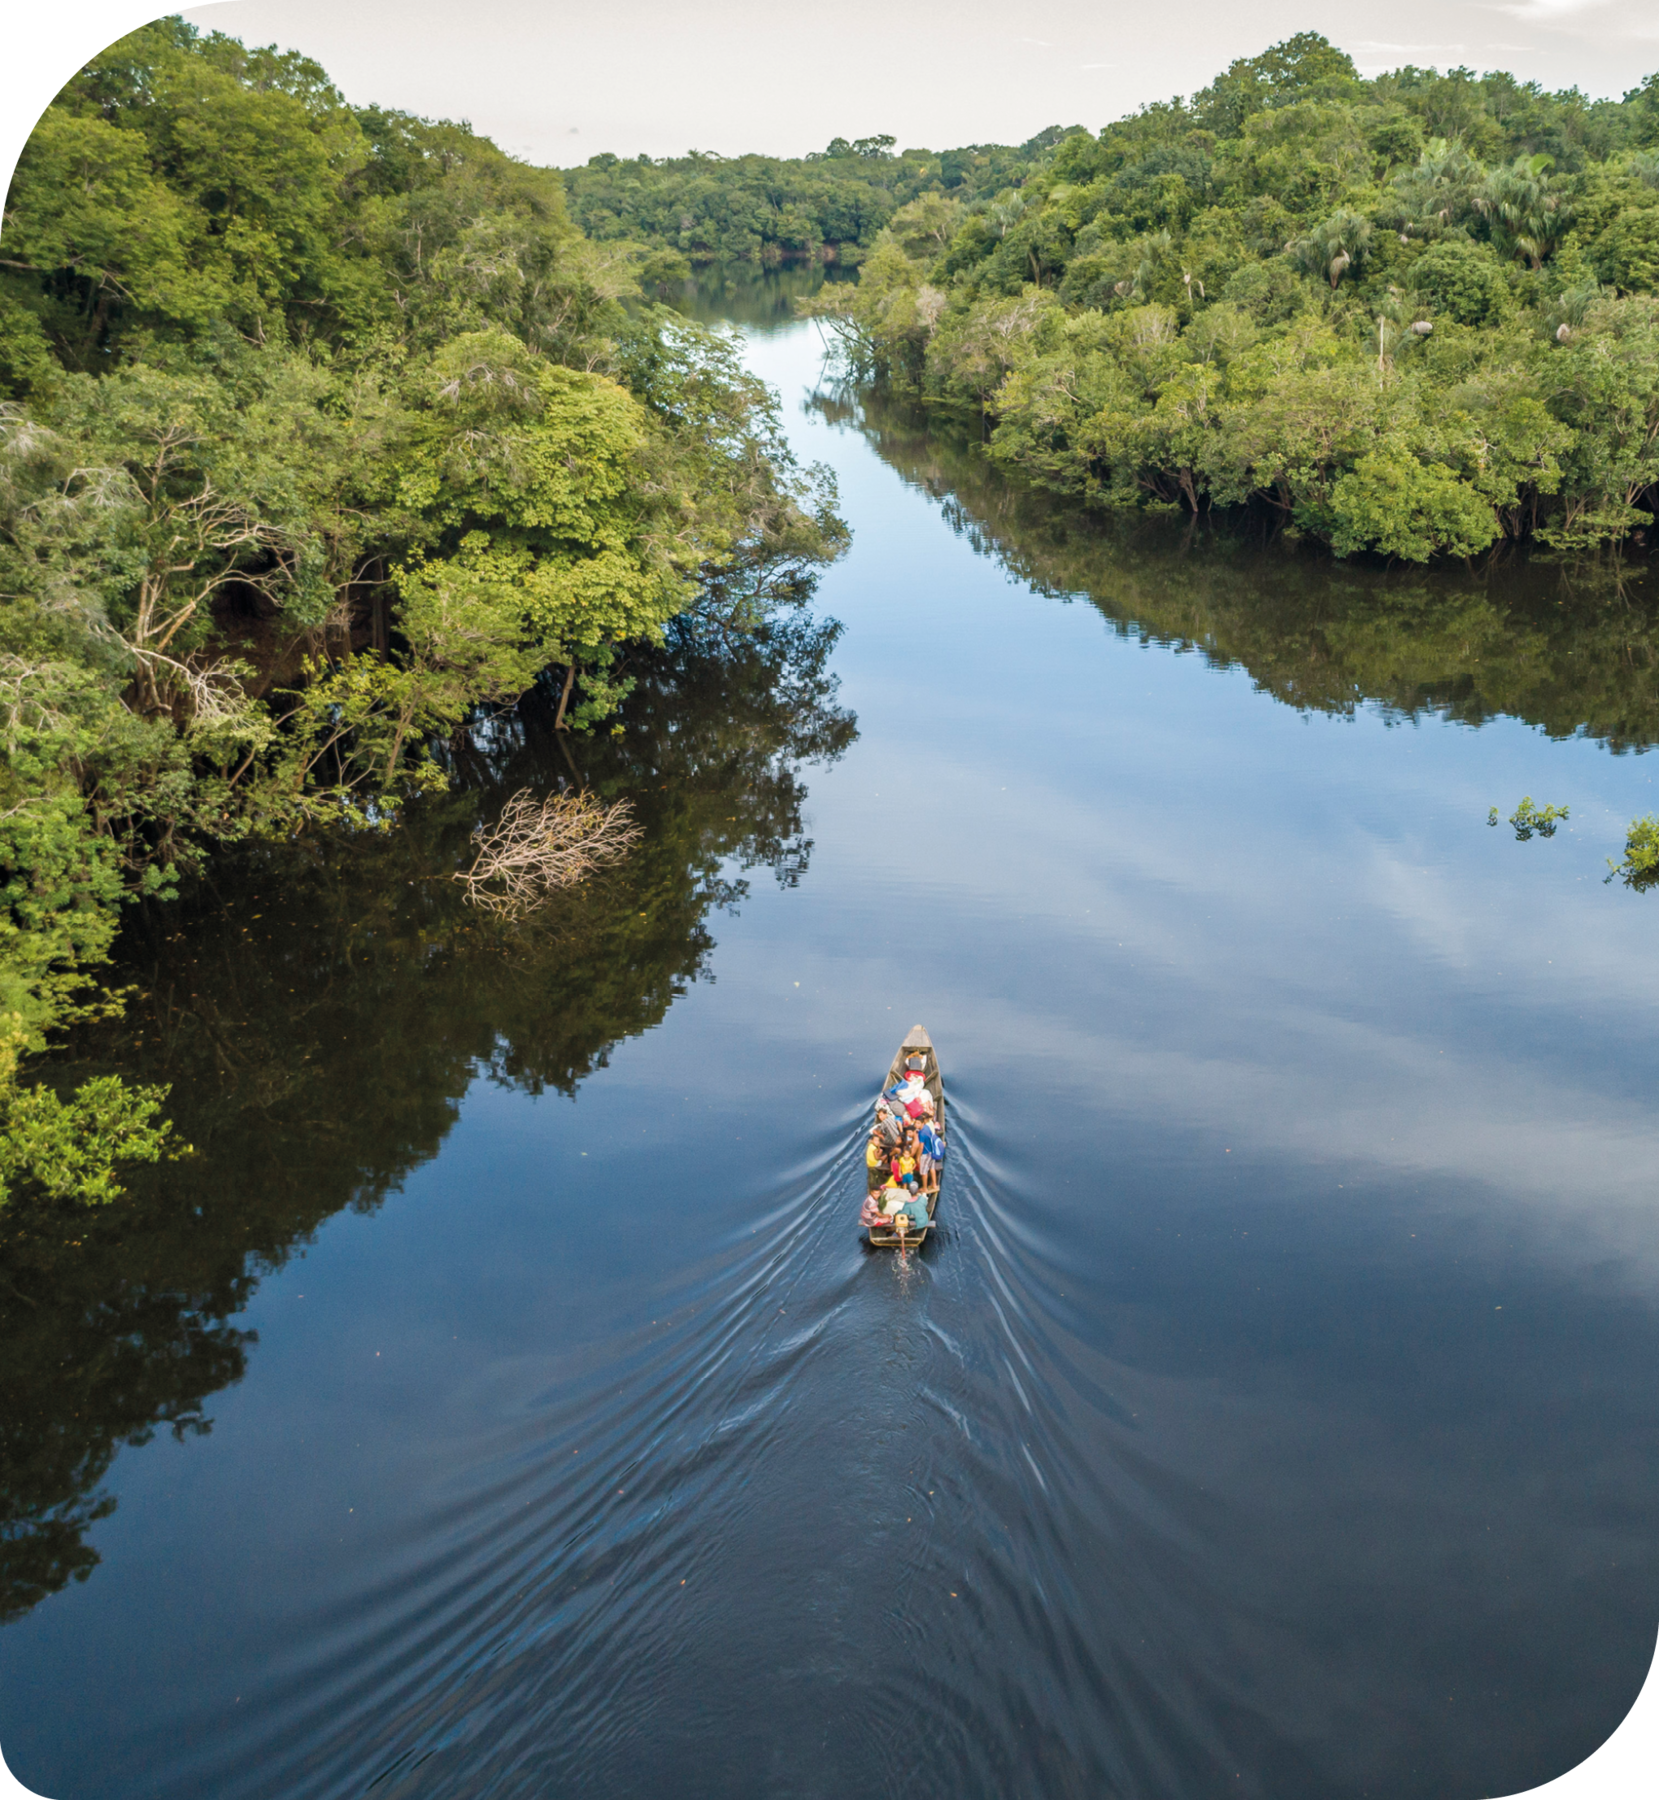 Fotografia. Vista aérea. Algumas pessoas em uma canoa, navegando em um rio cercado por uma floresta.